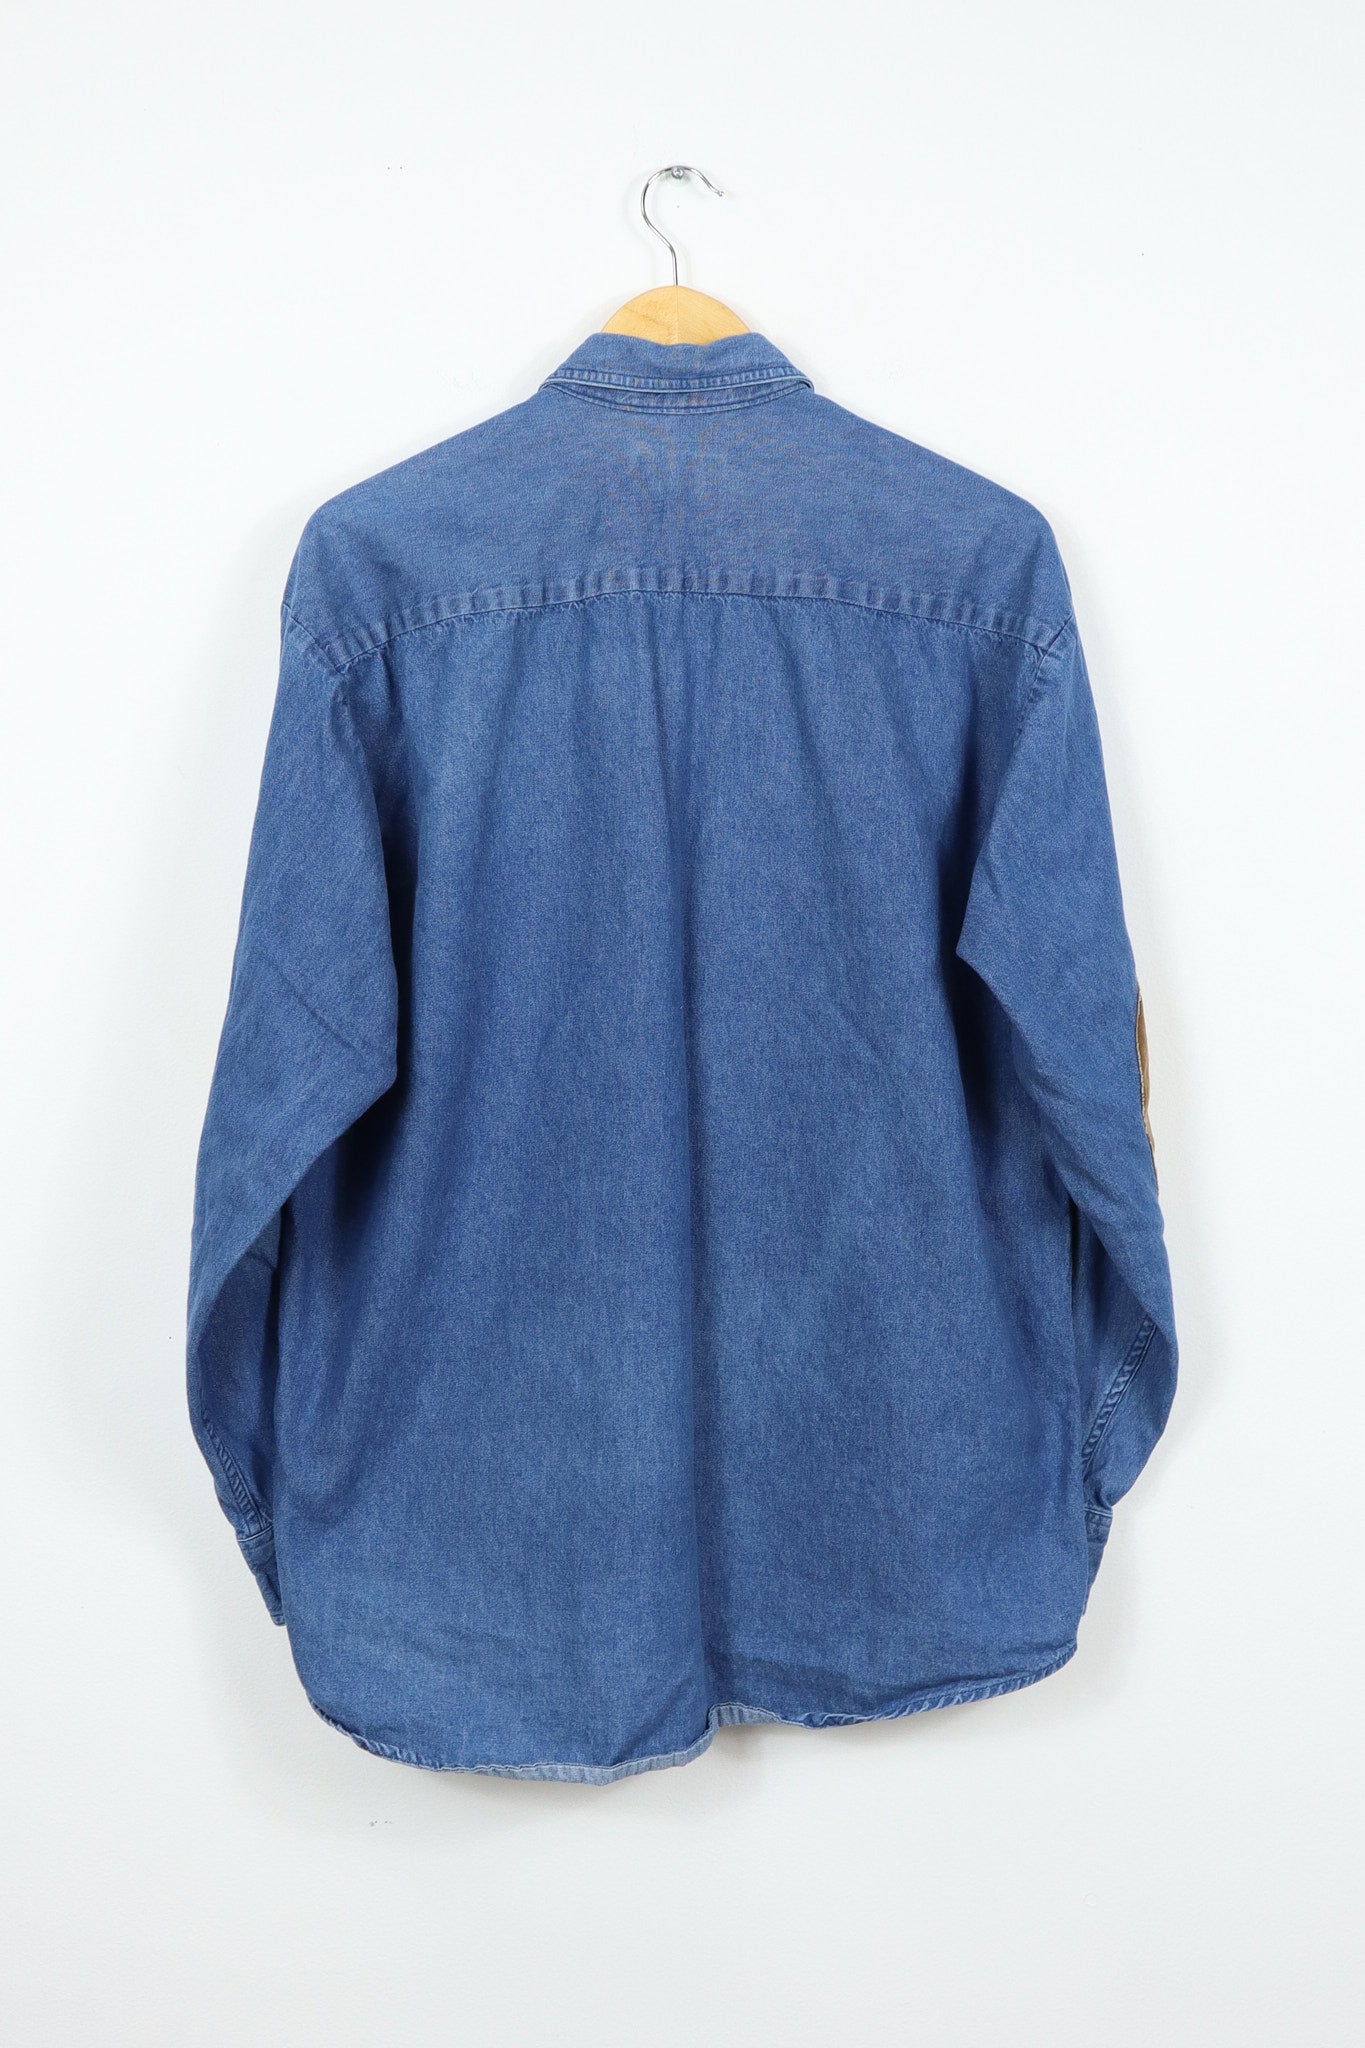 Vintage Buckmaster Denim Button-Down Shirt